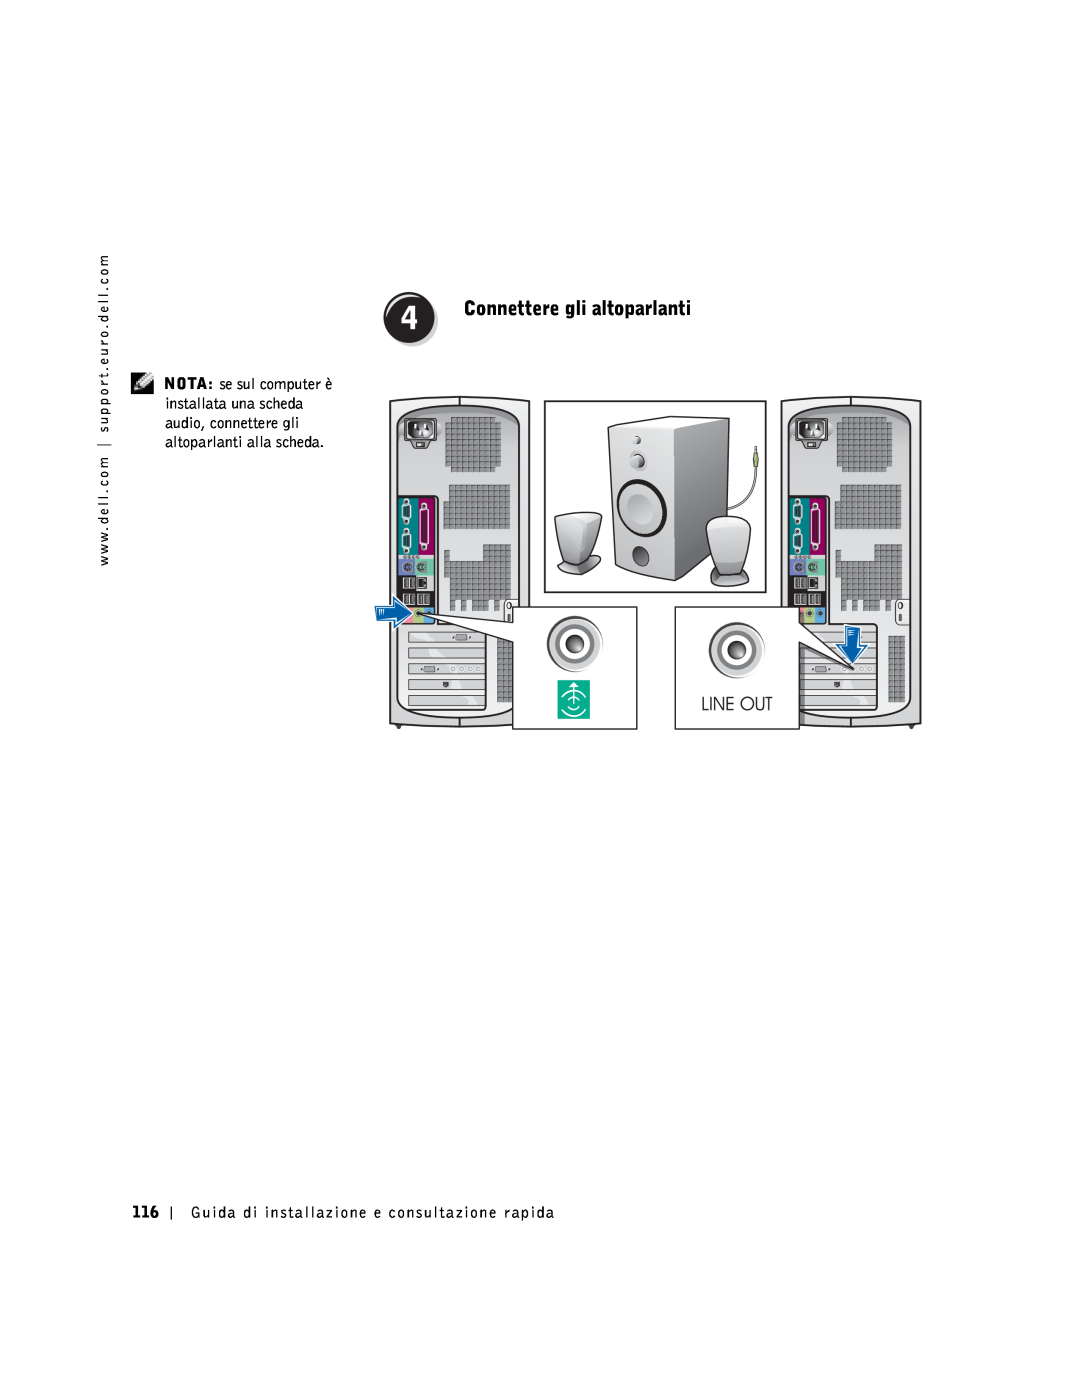 Dell 9T217 manual Connettere gli altoparlanti, Guida di installazione e consultazione rapida 